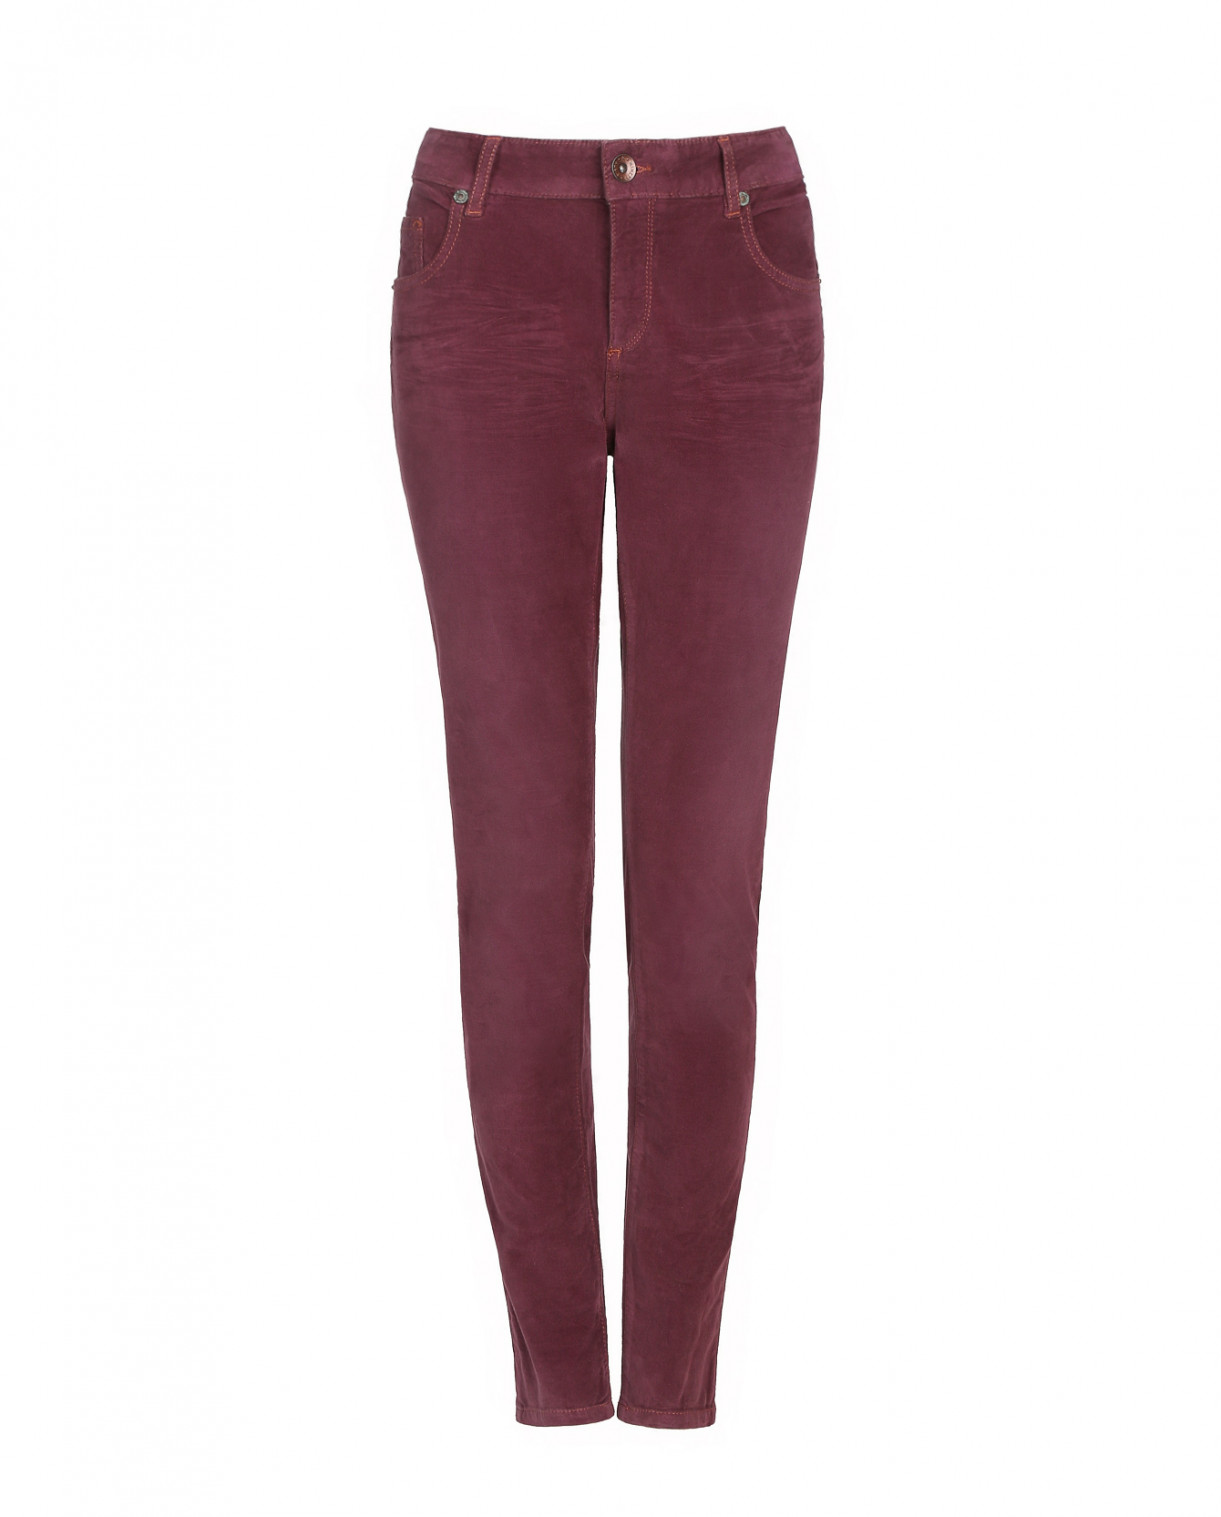 Узкие брюки из вельвета R95TH  –  Общий вид  – Цвет:  Фиолетовый